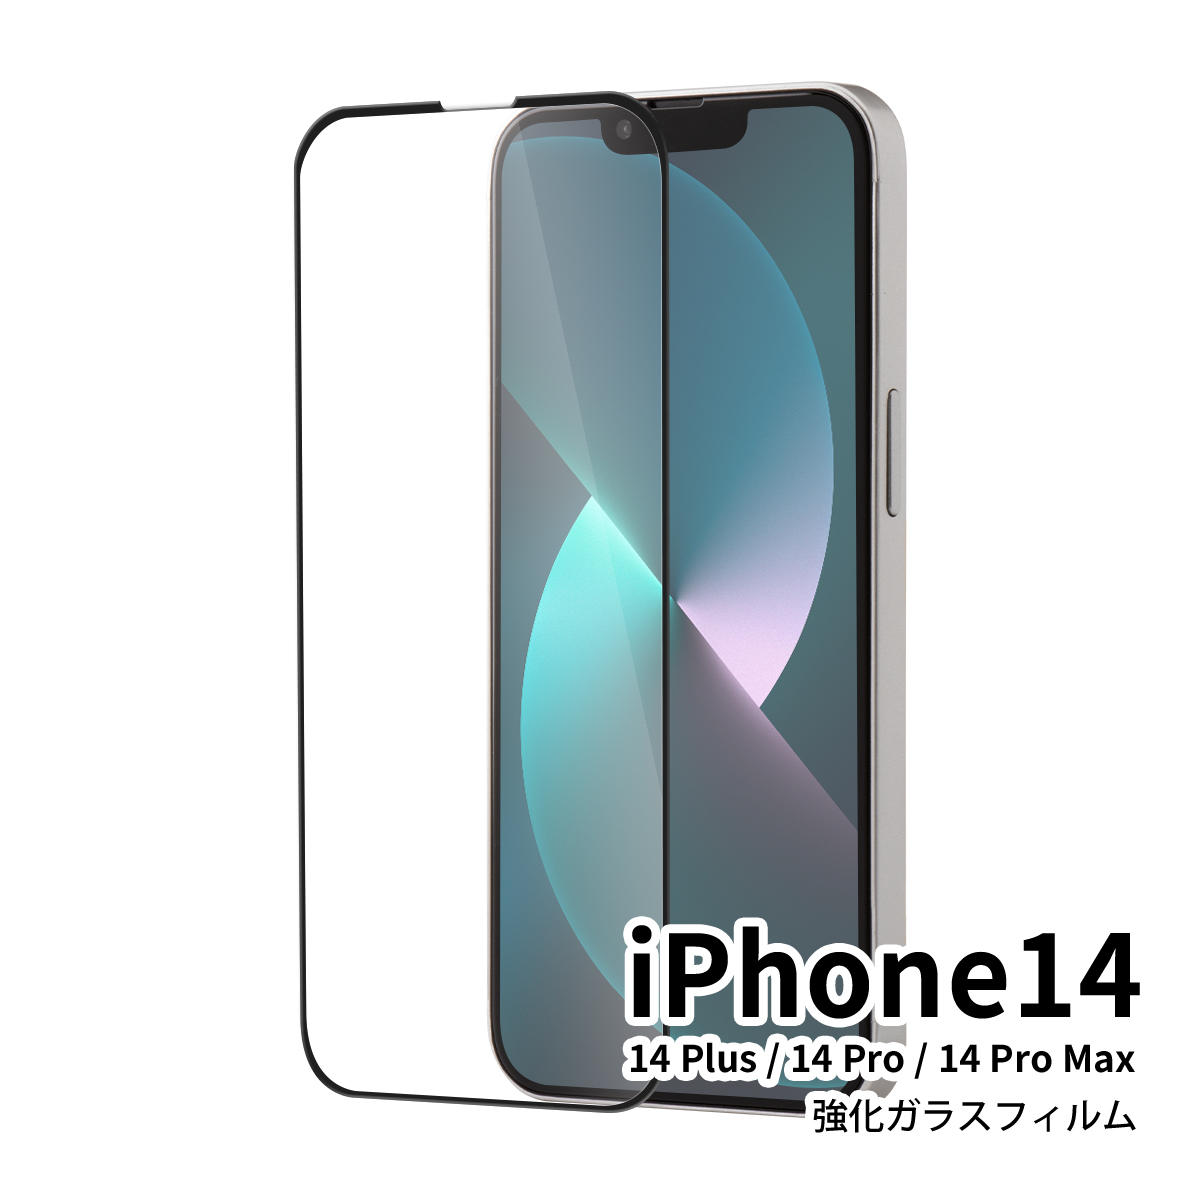 iPhone 14 iPhone 14 Plus iPhone 14 Pro iPhone 14 Pro Max カラー強化ガラス保護フィルム 9H